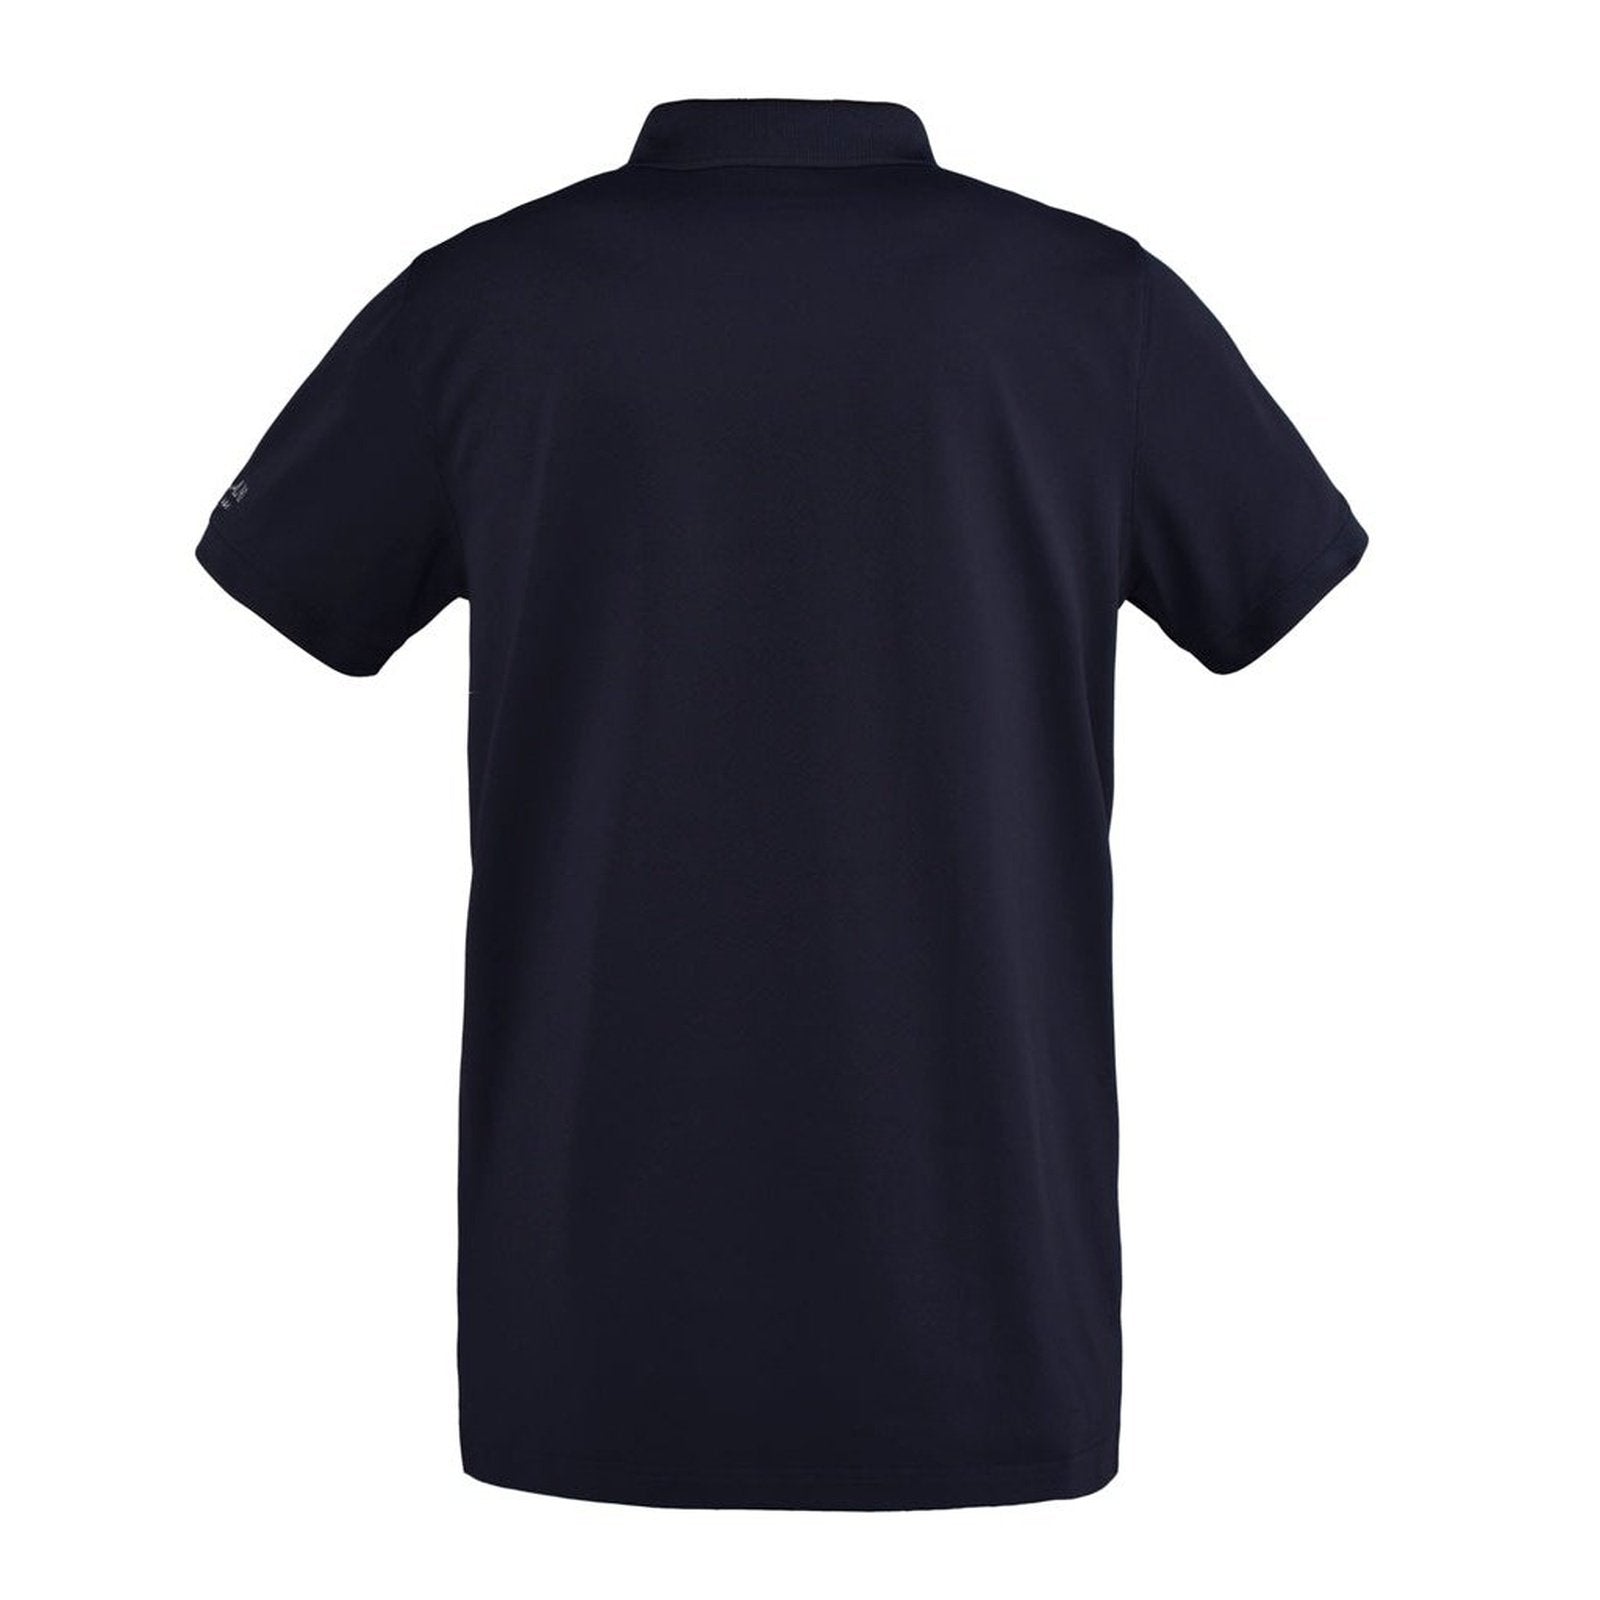 Kingsland Classic Junior/Kinder Polo Pique Shirt in navy bei SP-Reitsport Kingsland bei SP-Reitsport